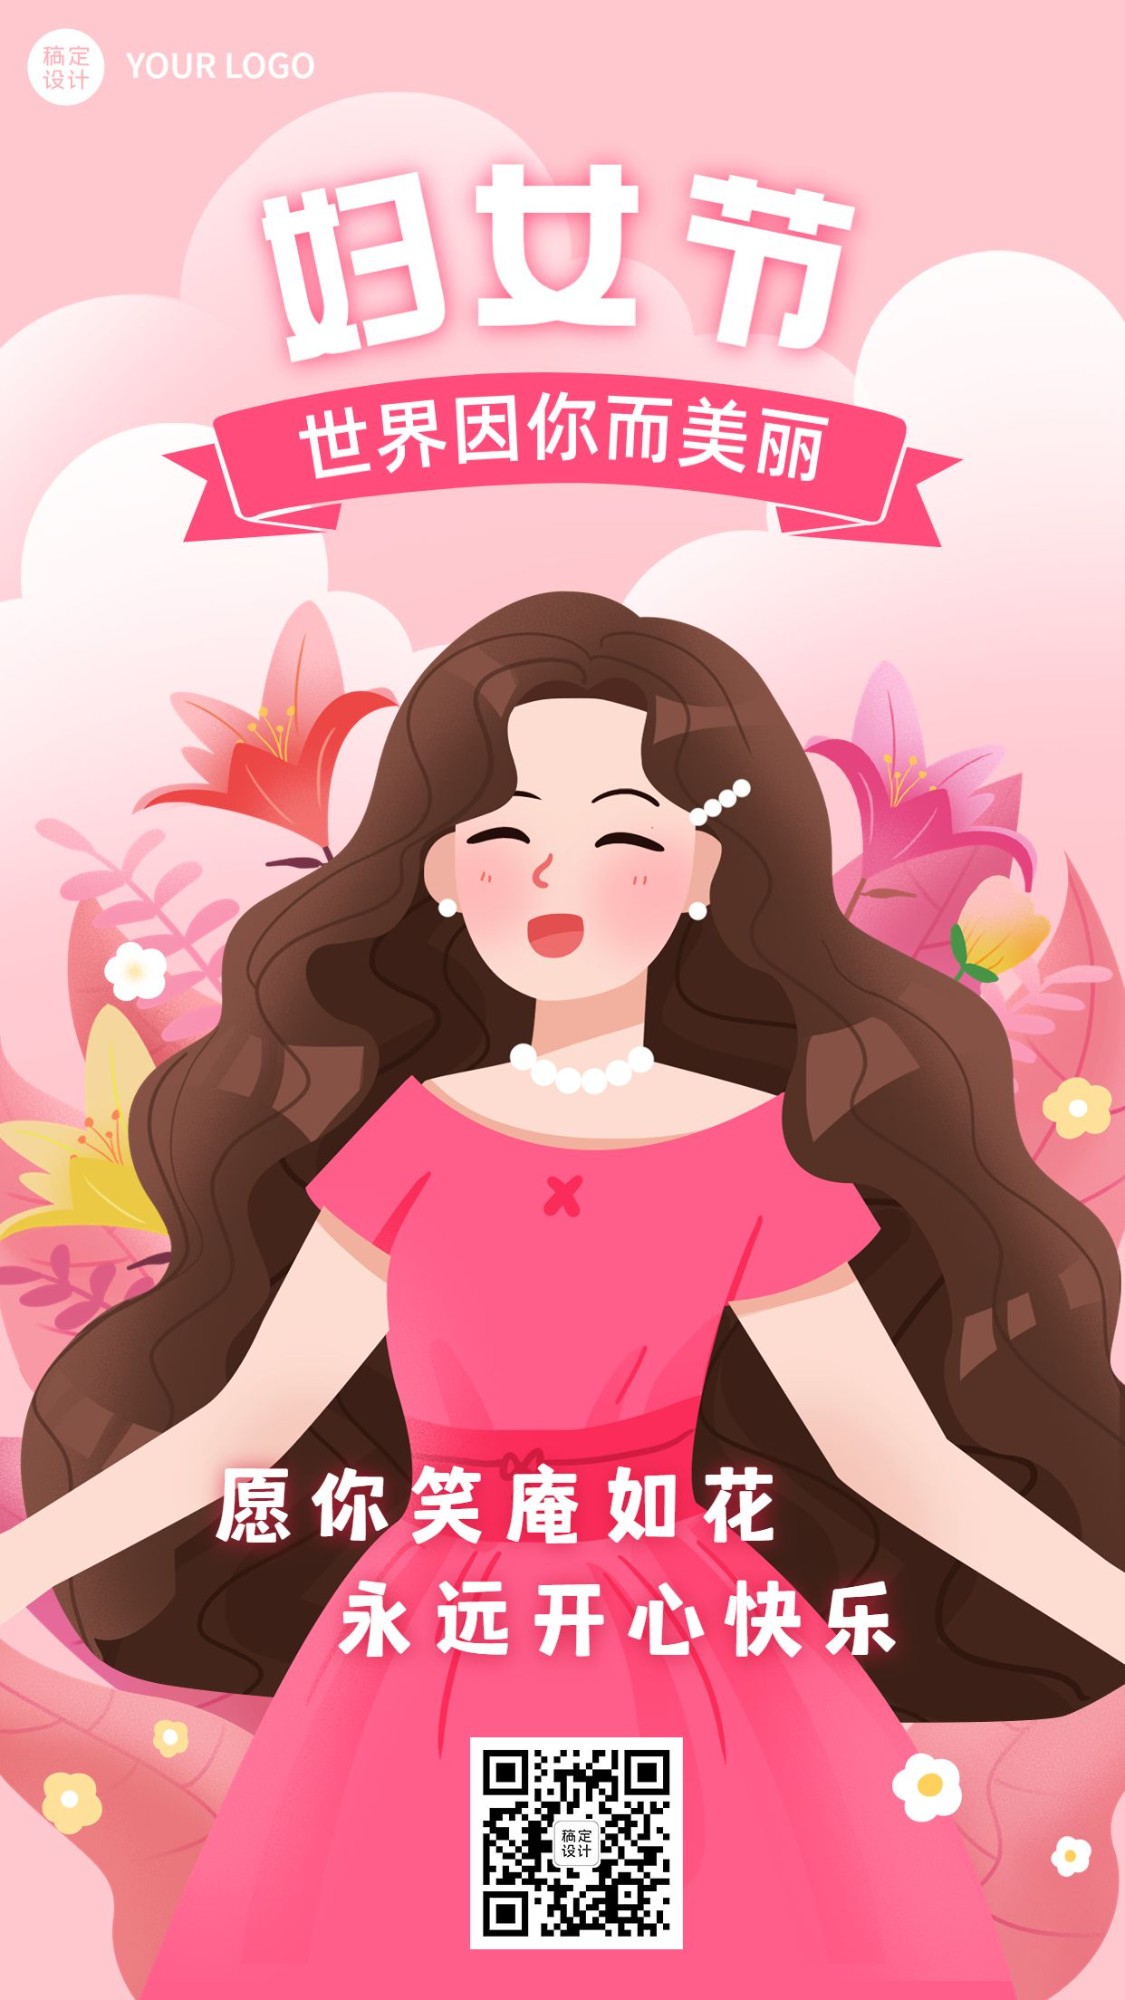 三八妇女节节日祝福插画手机海报预览效果